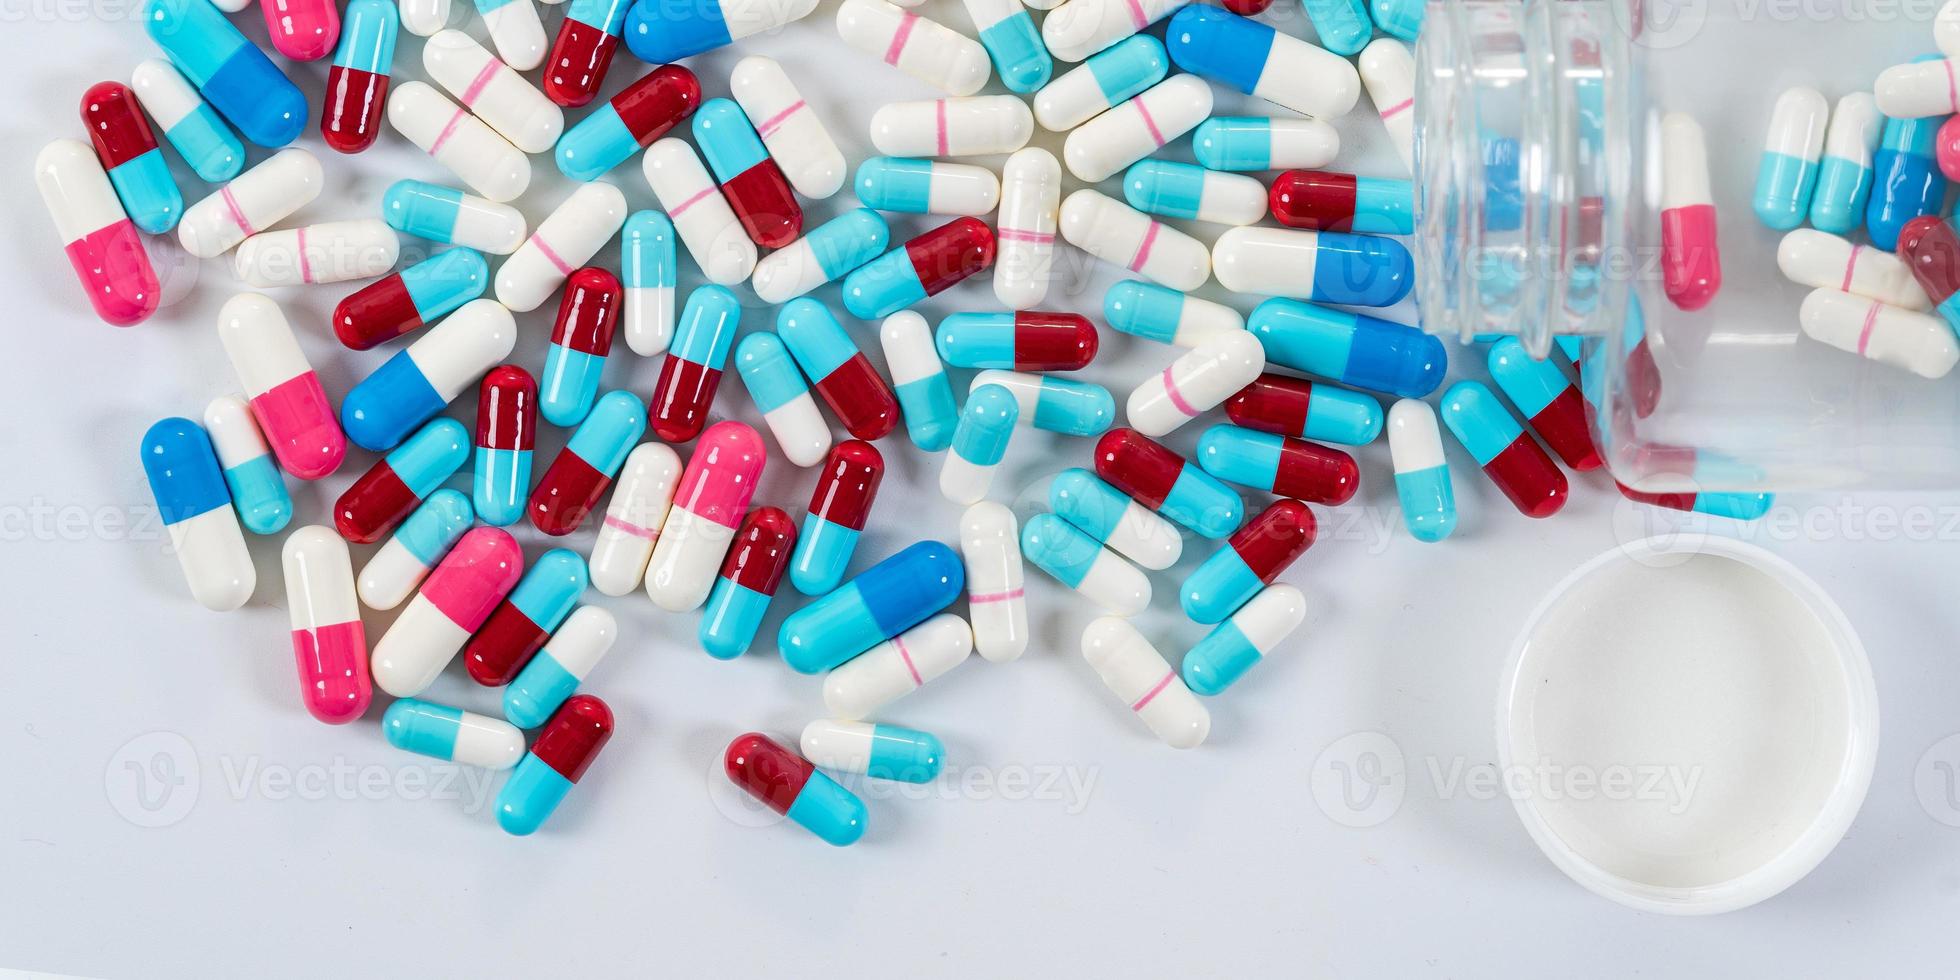 molti tipi di farmaci pillole pillole capsule su sfondo bianco foto